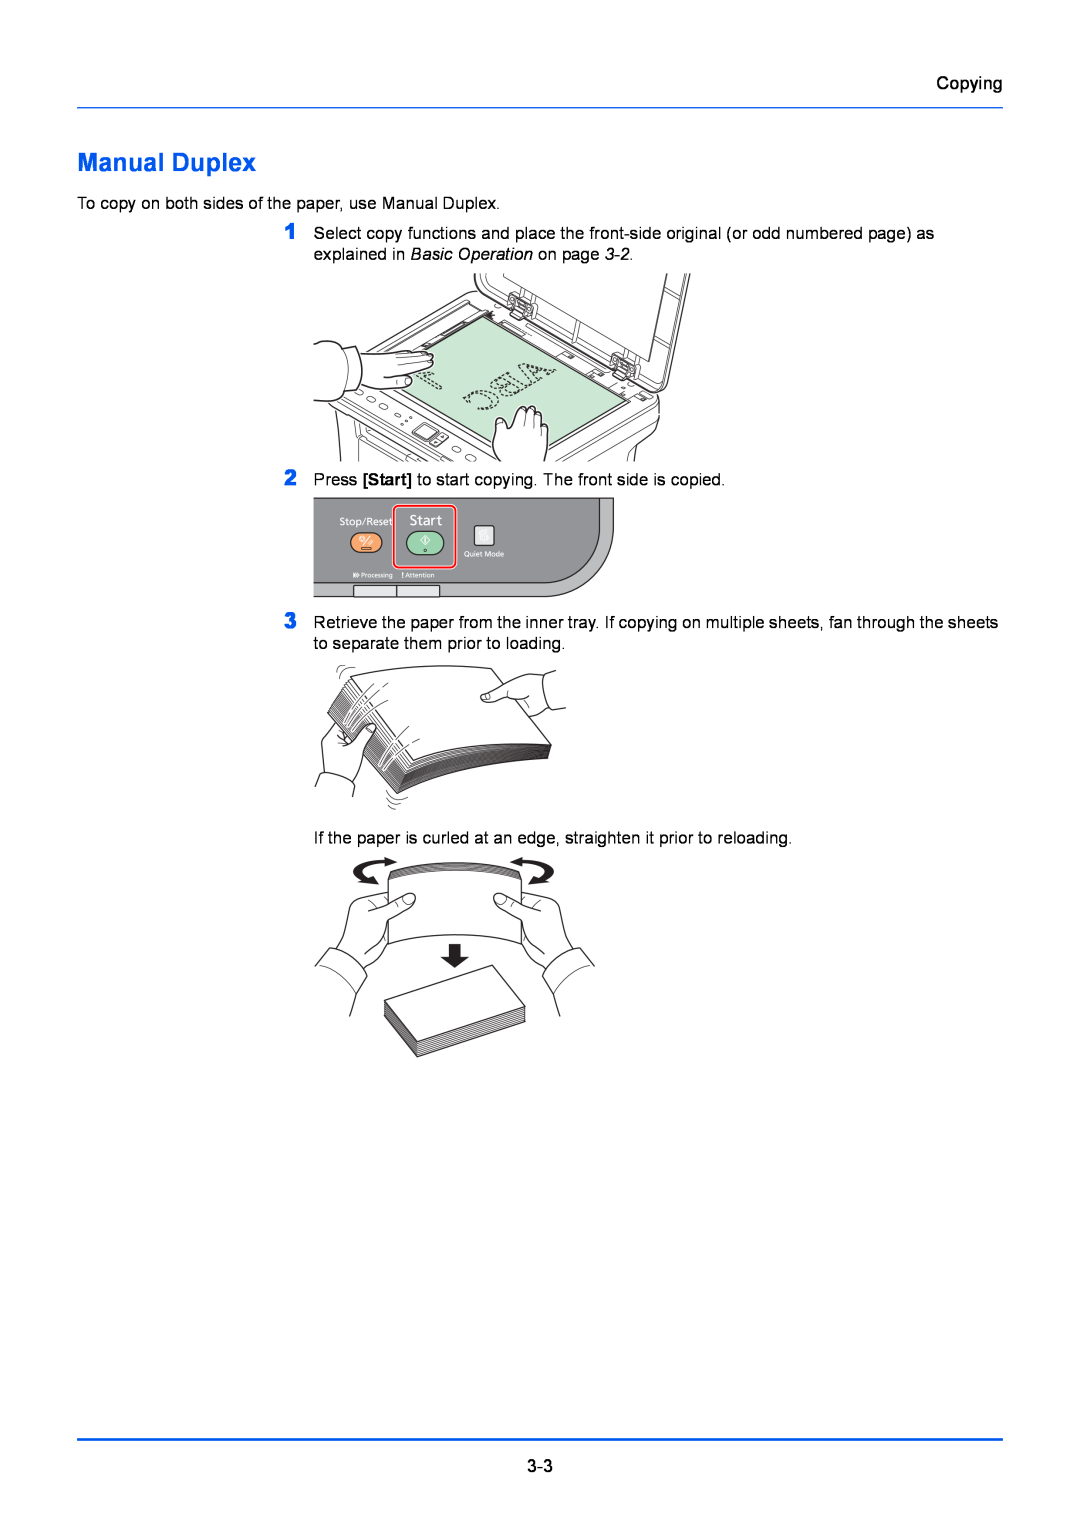 Kyocera FS-1220MFP, FS-1020MFP manual Manual Duplex 